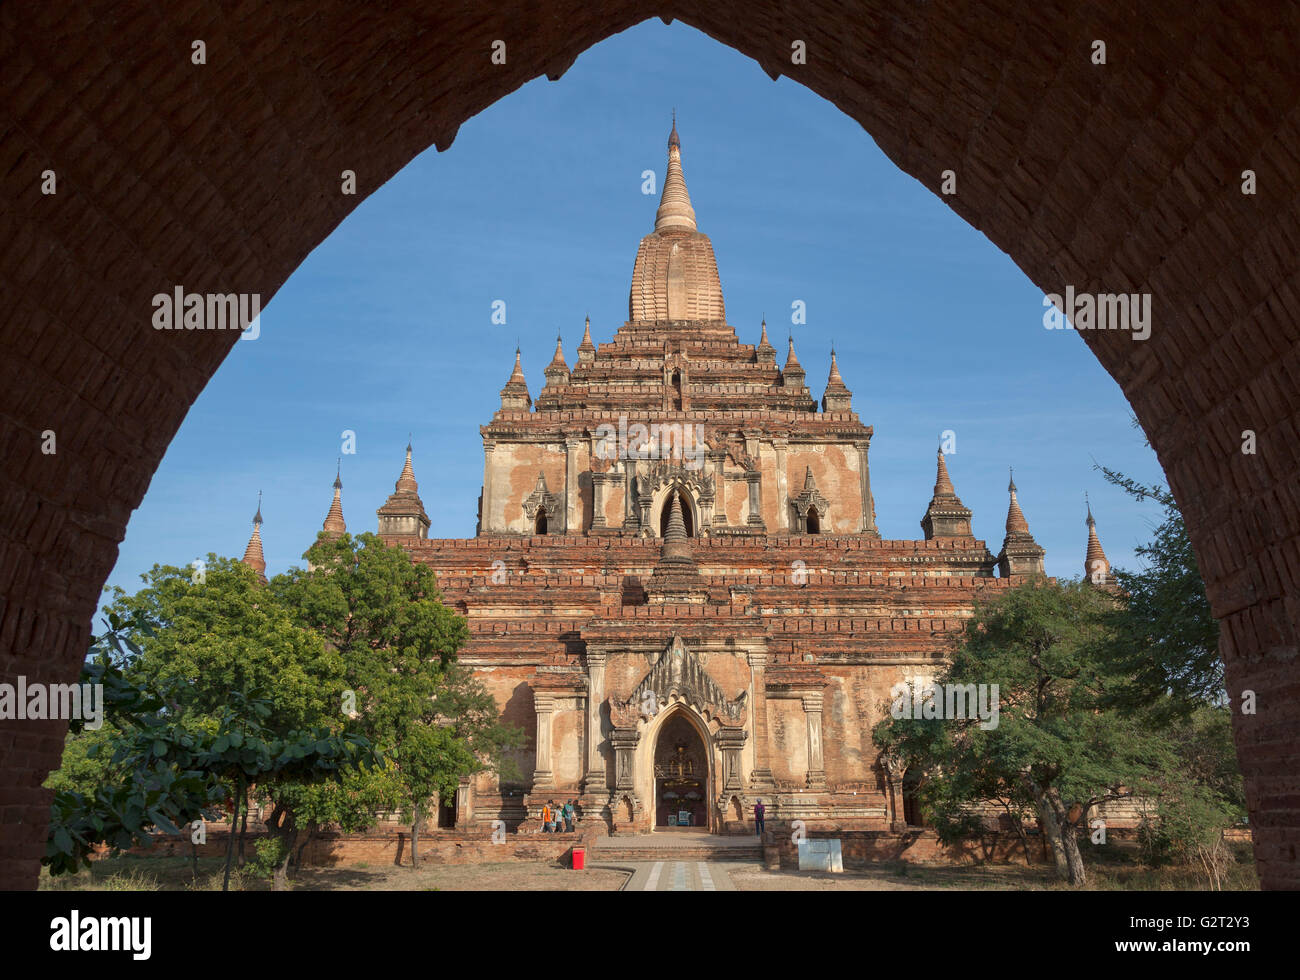 L'entrata dell'Dhammayangyi Pahto, a Bagan (Myanmar). Questo fortificato tempio Buddista risale al XII secolo. Foto Stock